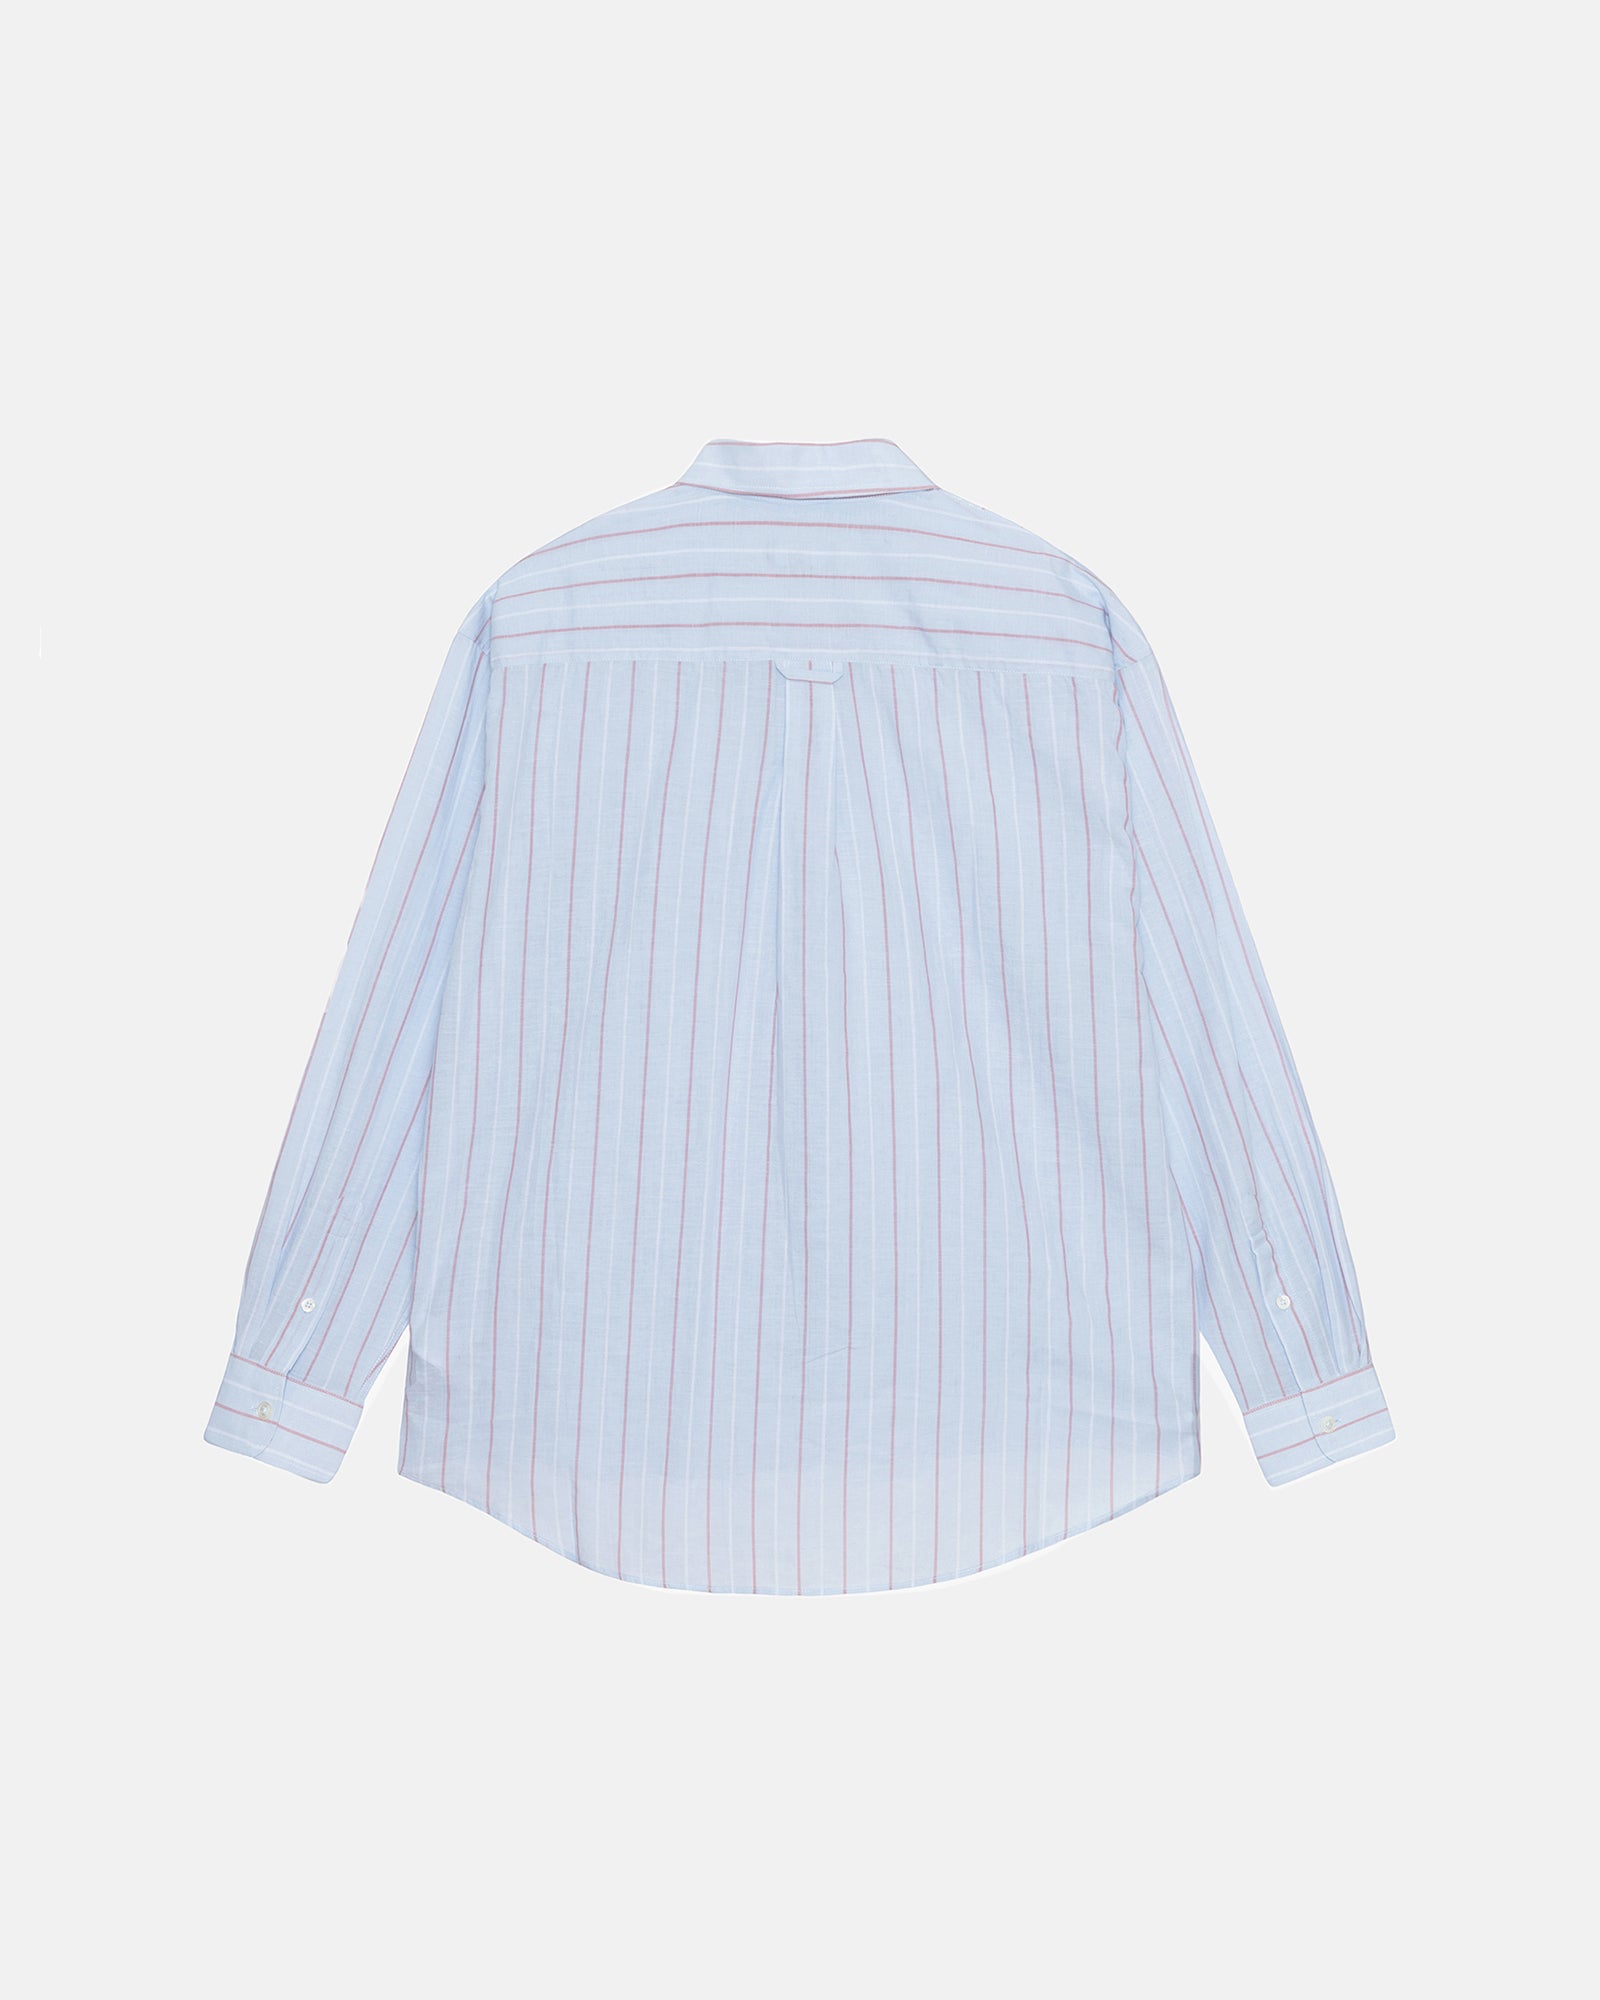 Stüssy Classic Shirt Striped Cotton Linen Light Blue Tops